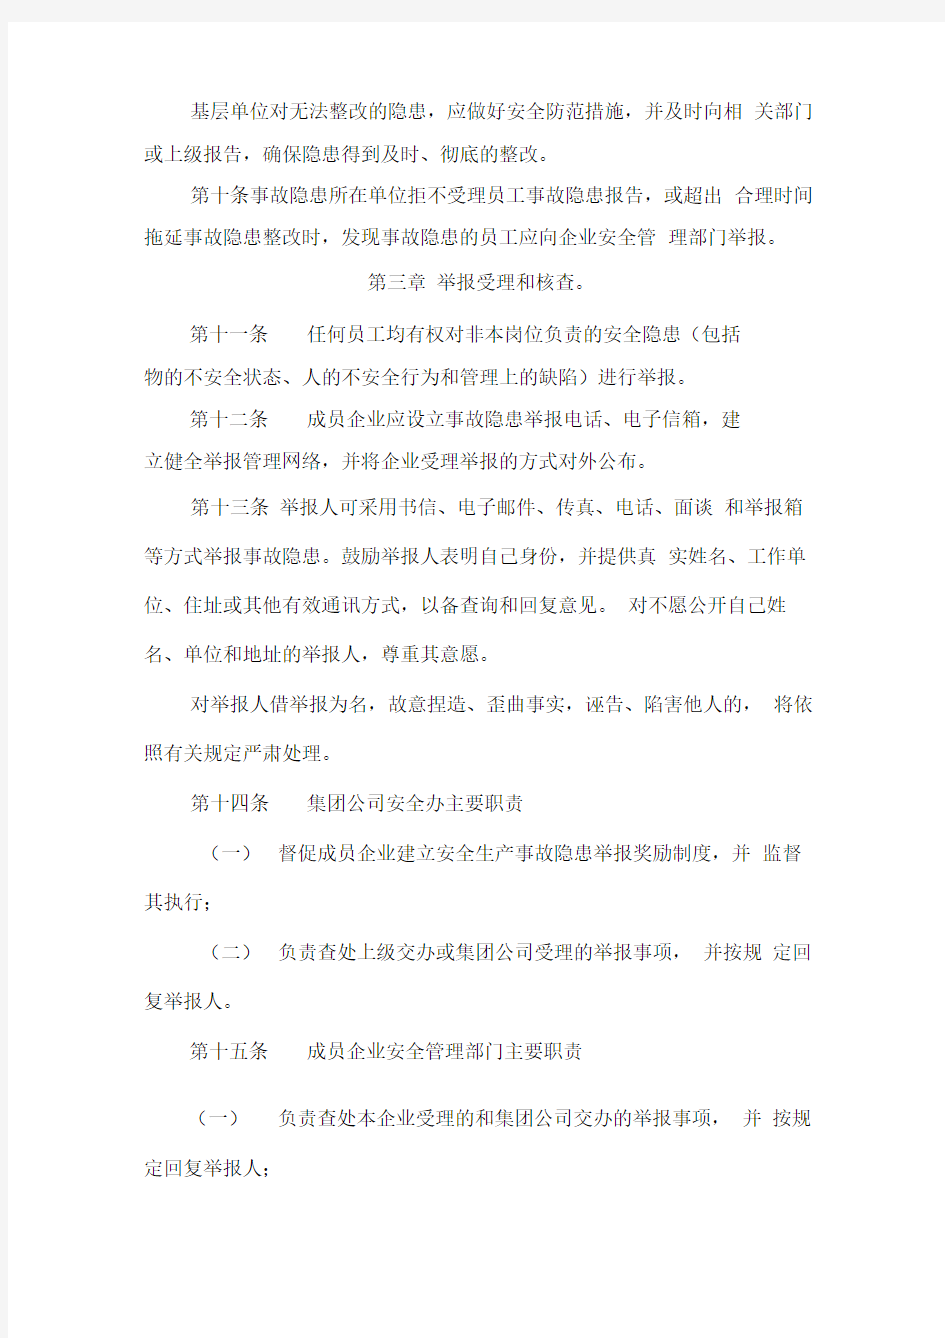 杭州华东医药集团安全生产事故隐患报告和举报奖励制度